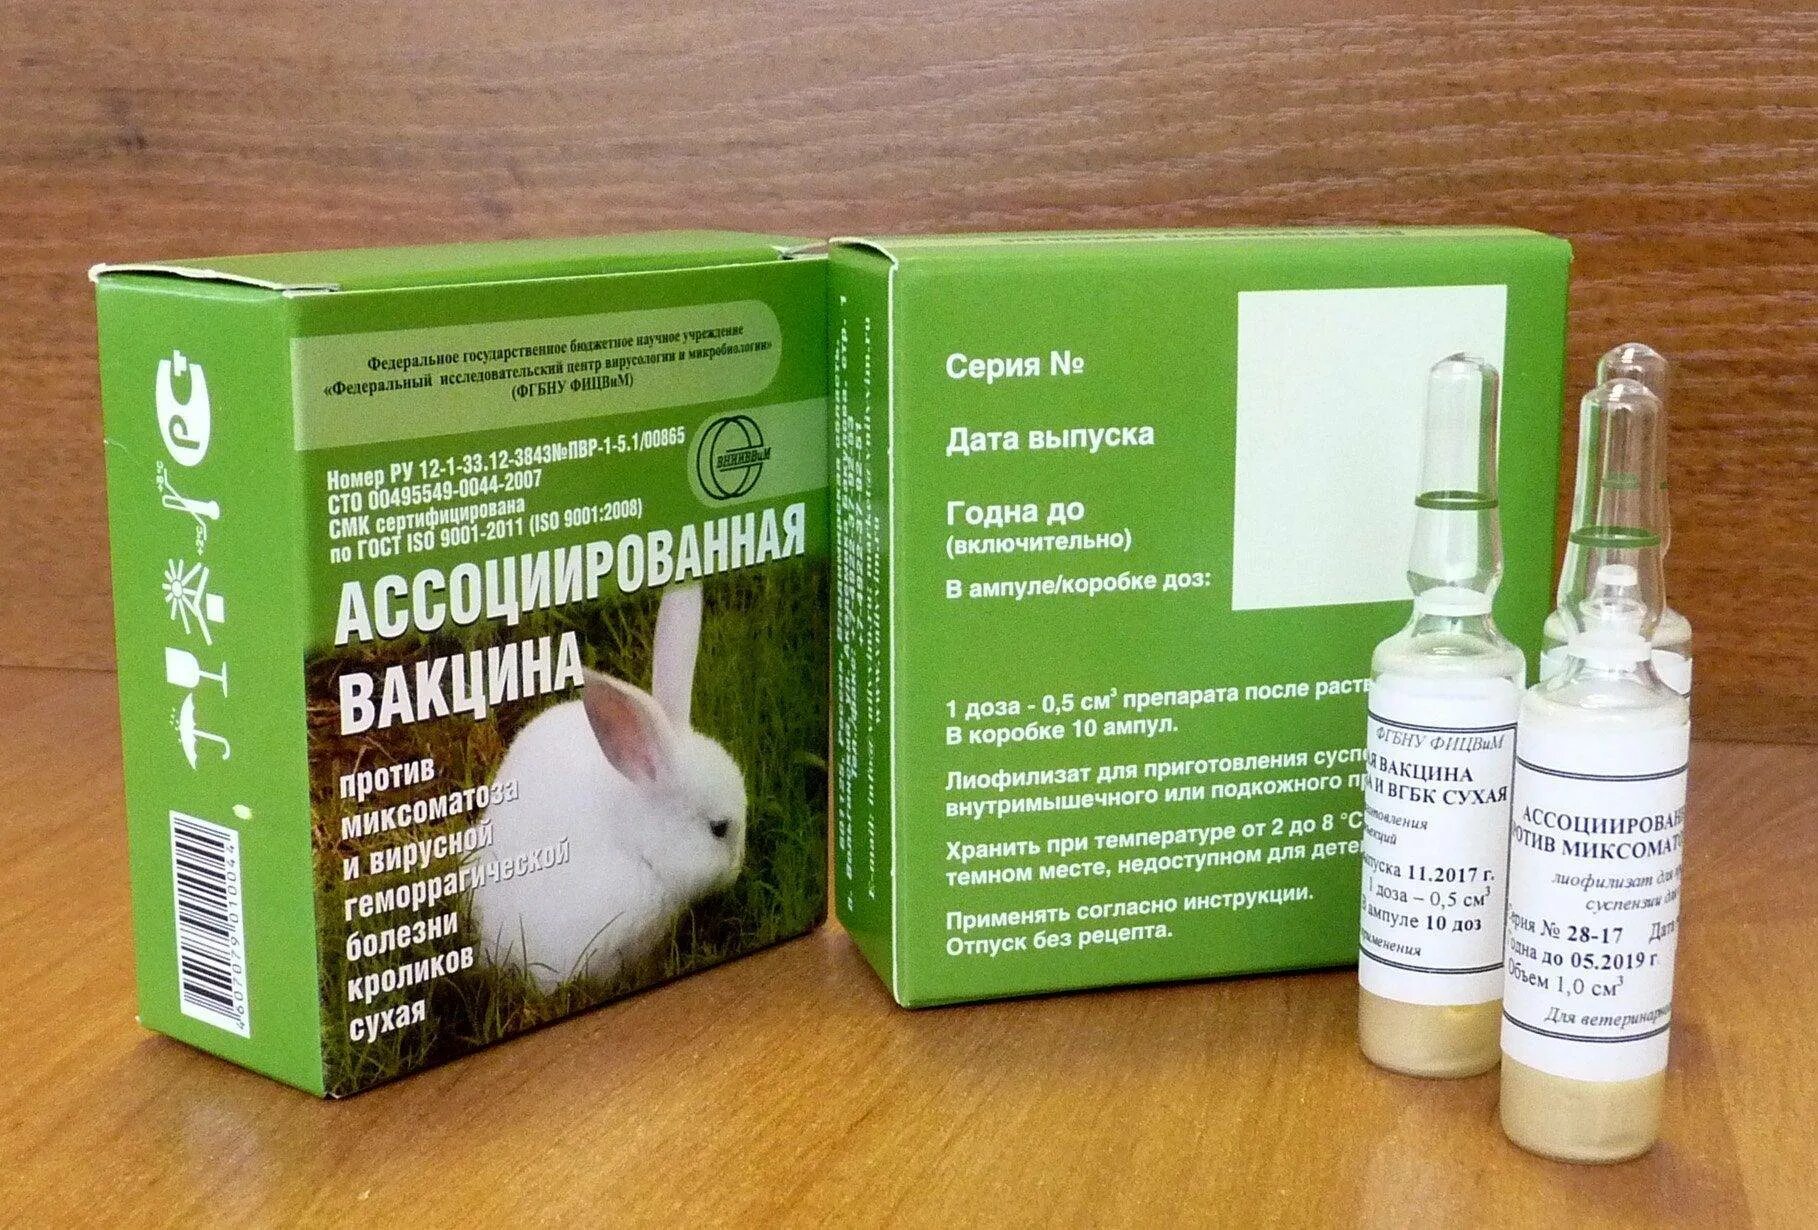 Вакцина ВГБК+миксоматоз ассоциированная сухая. Миксоматоз и ВГБК У кроликов вакцина. Вакцина ассоциированная для кроликов от миксоматоза и ВГБК. Вакцина для кроликов миксоматоза.